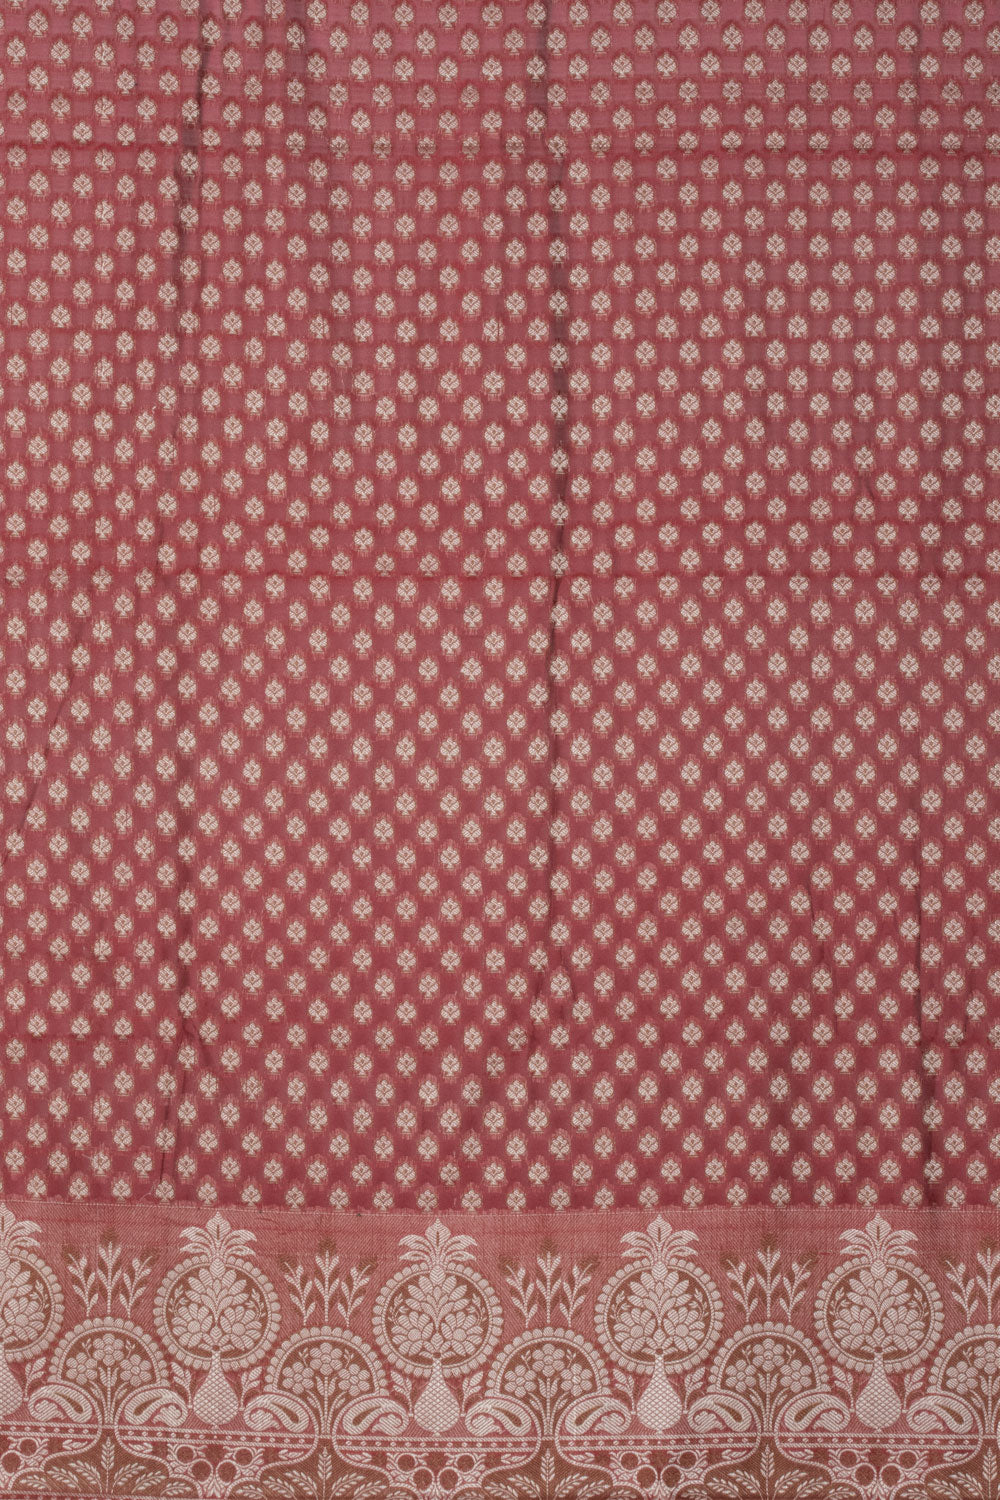 Maroon Banarasi Cotton Salwar Suit Material 10061161